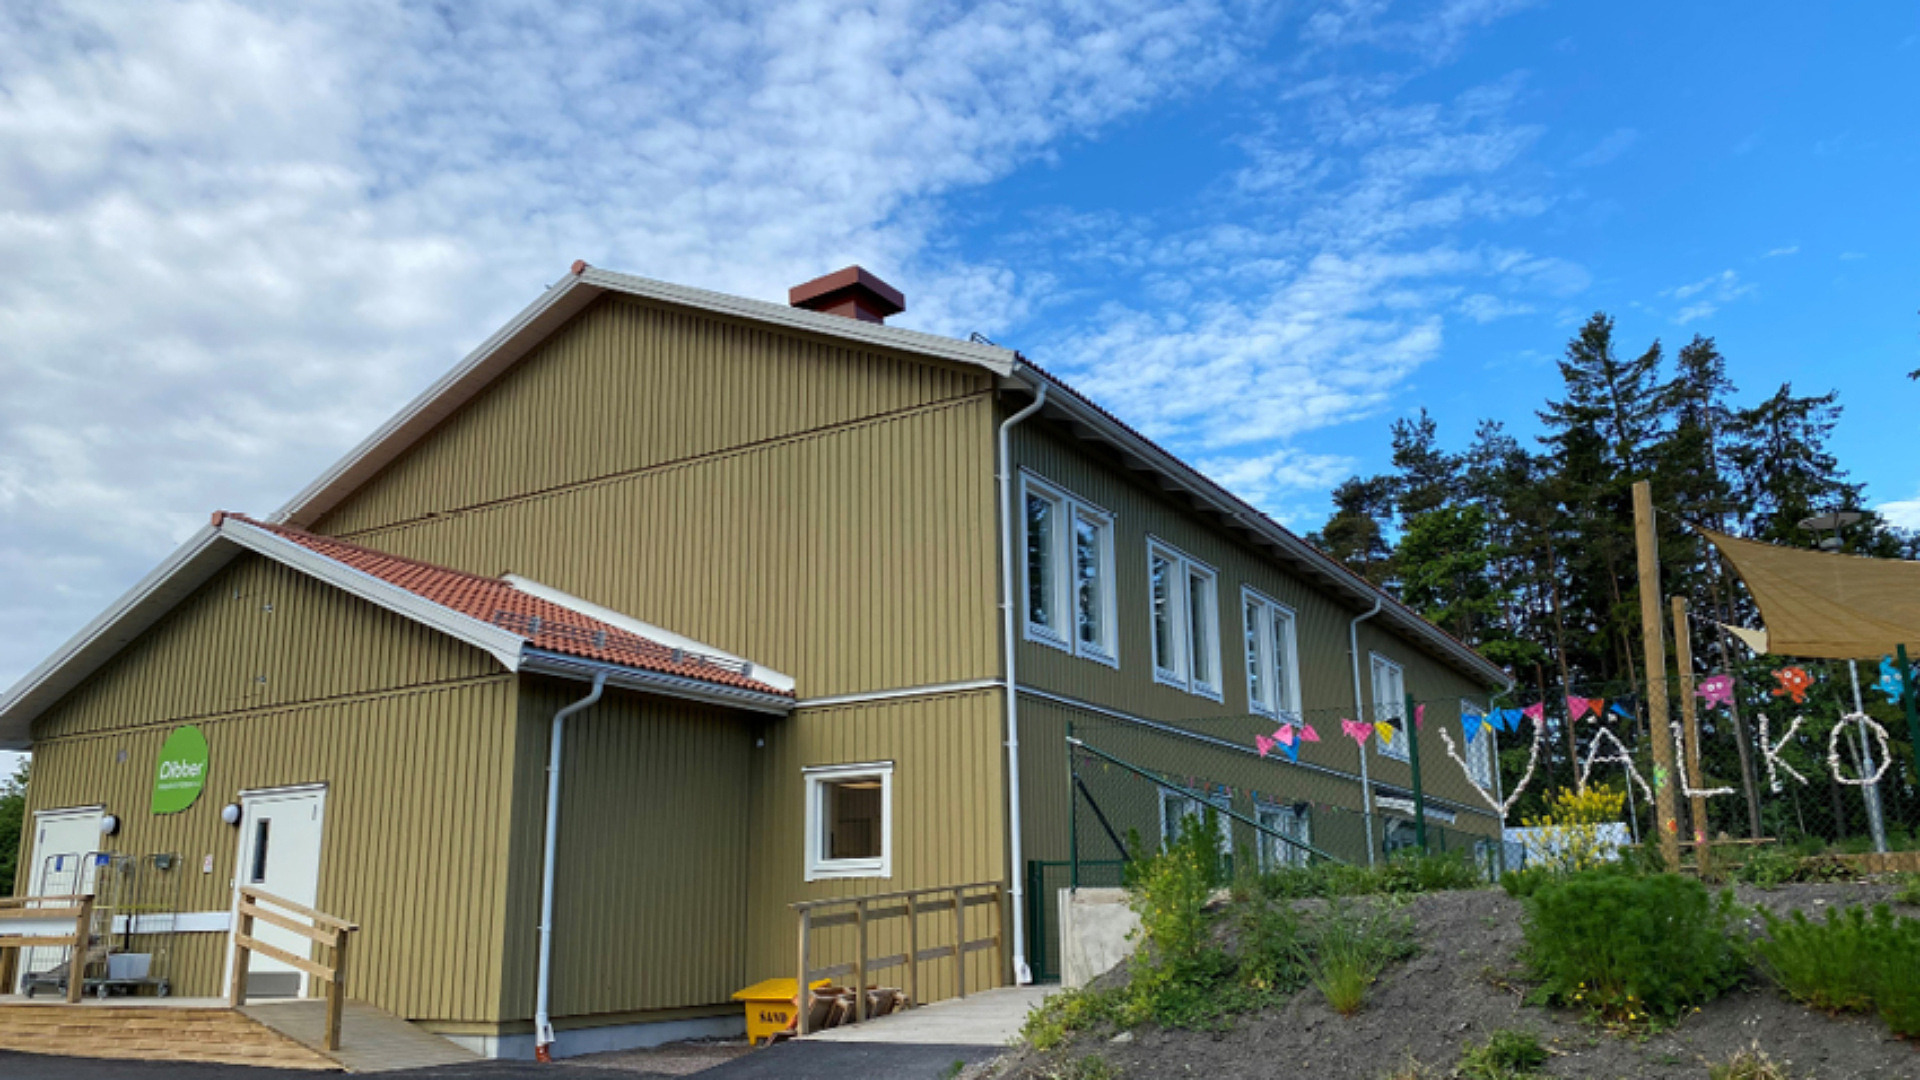 Dibber Fänsåker är en fristående förskola i området Fänsåker i Vagnhärad. Byggnaden har två våningar och gården delas av barnen som går här.